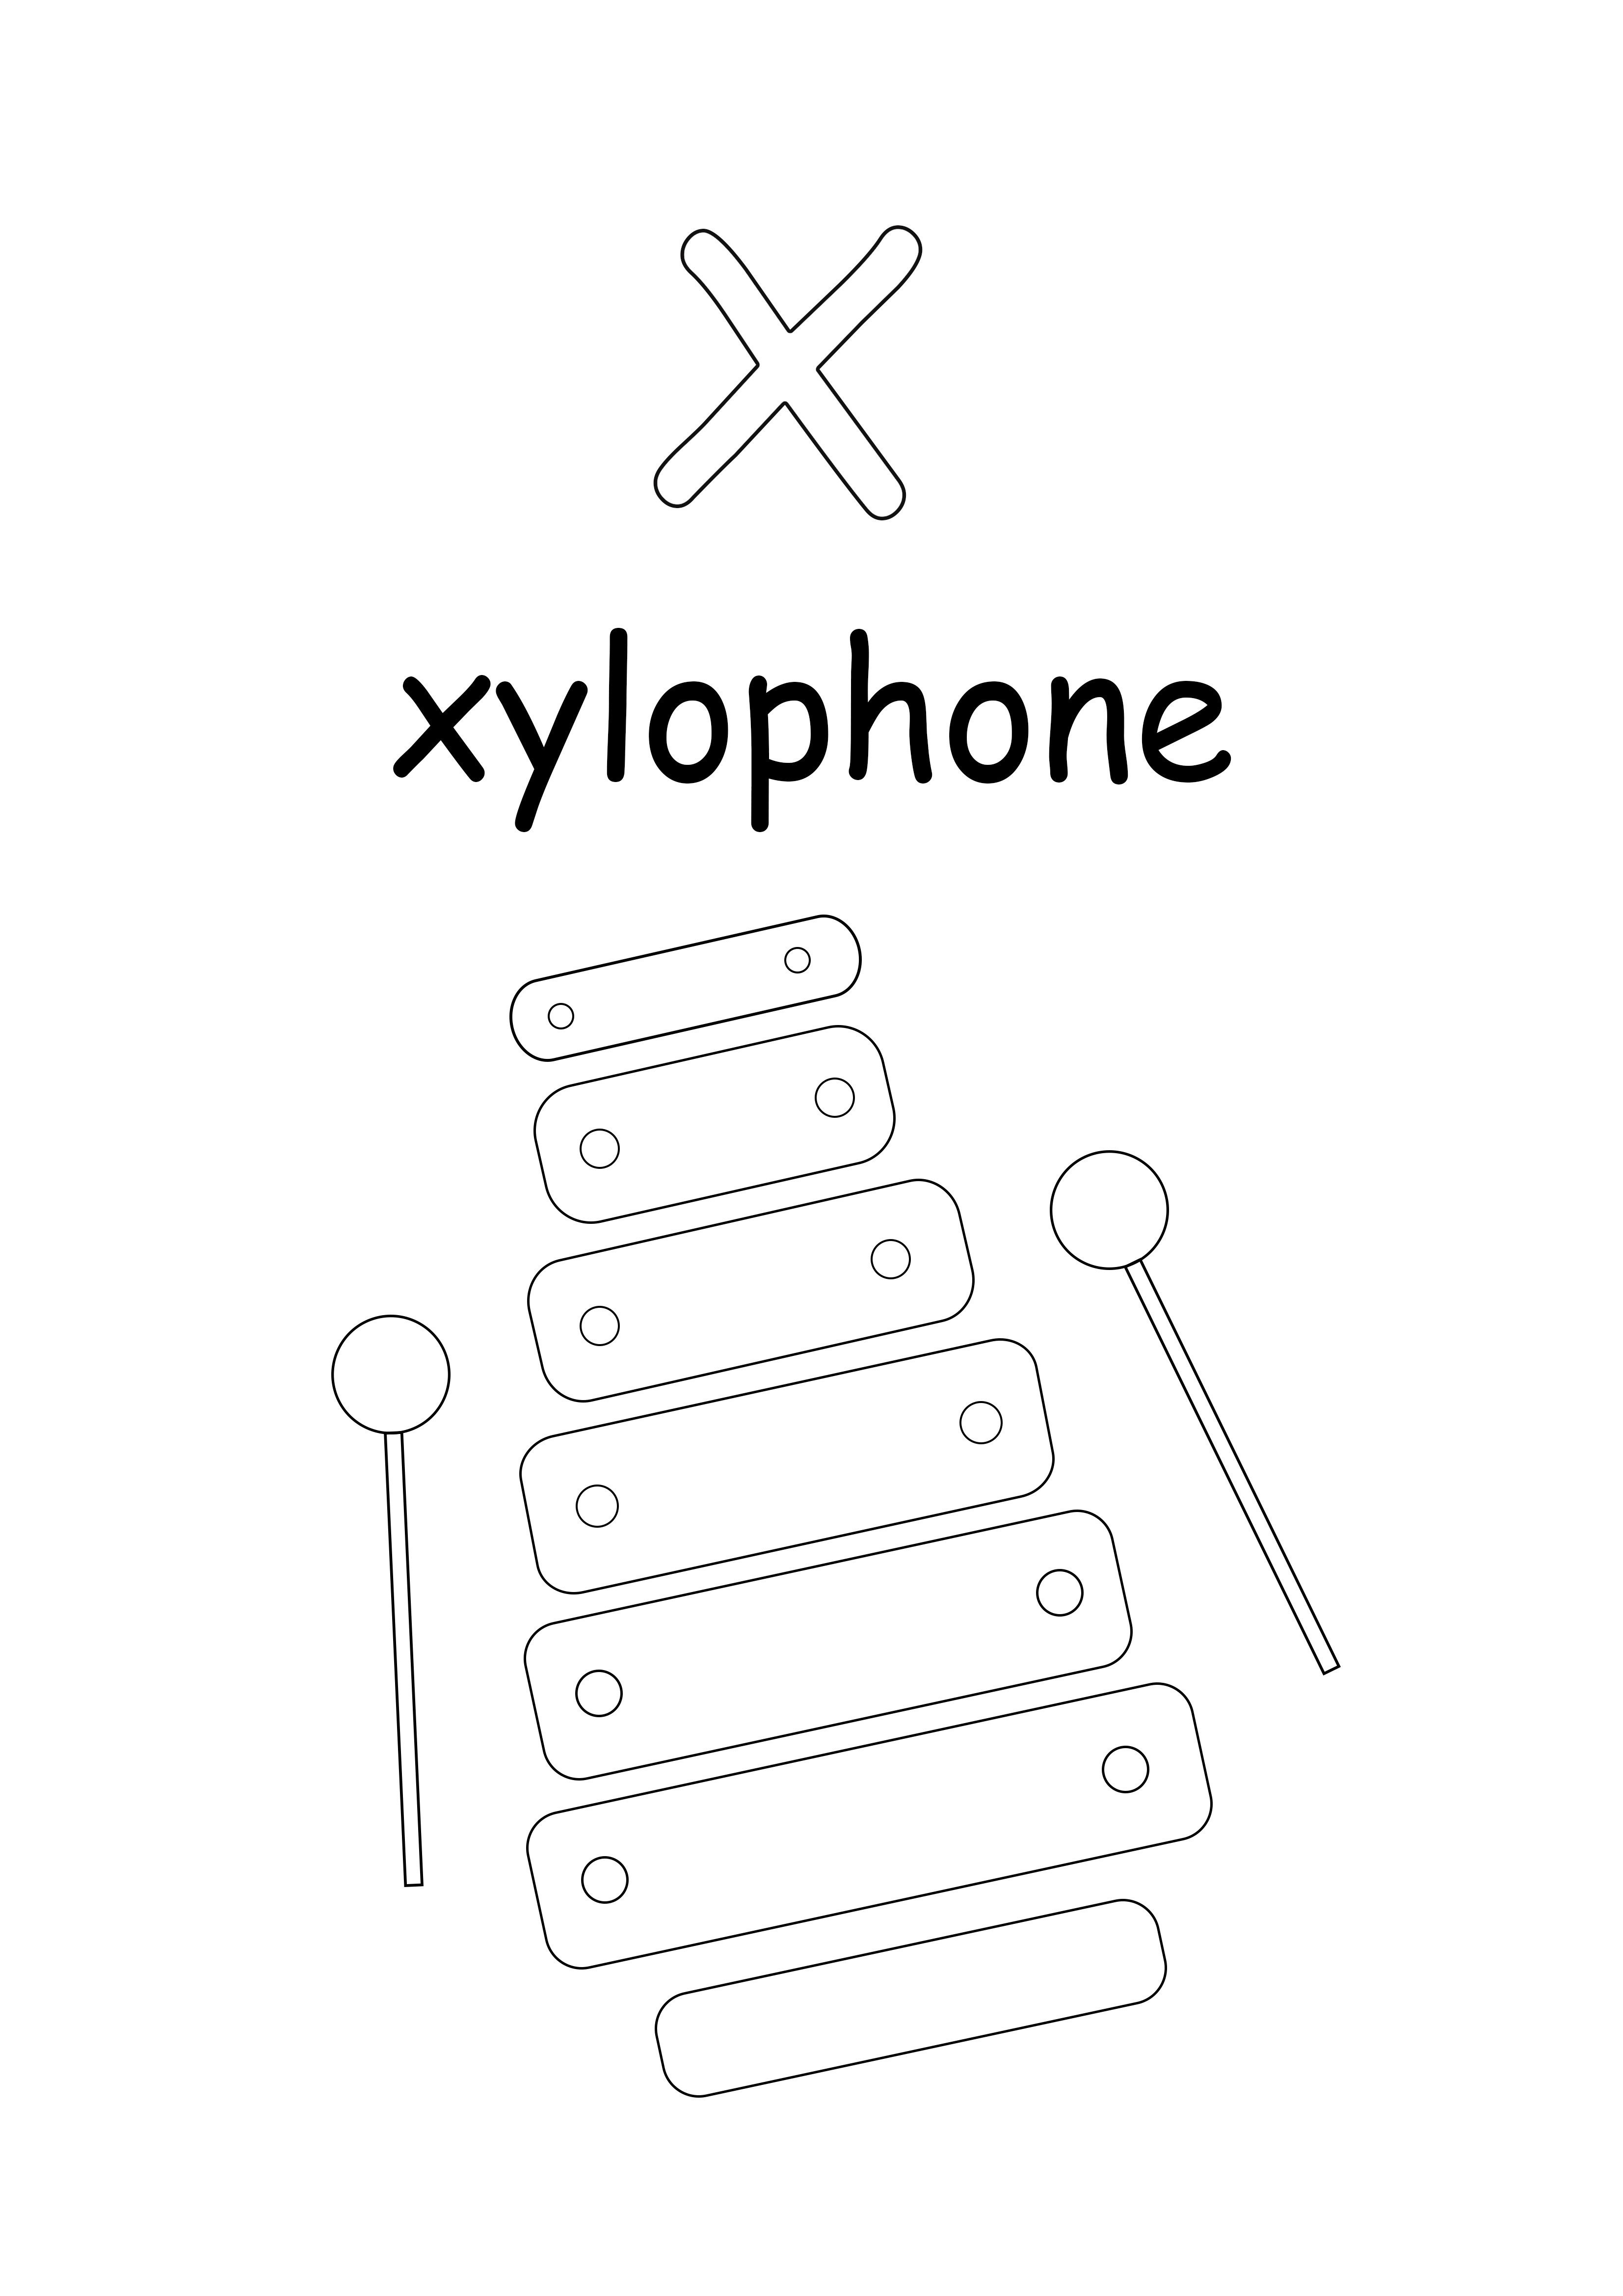 Pieni x-kirjain on tarkoitettu ksylofonittomaan väritykseen ja painatukseen